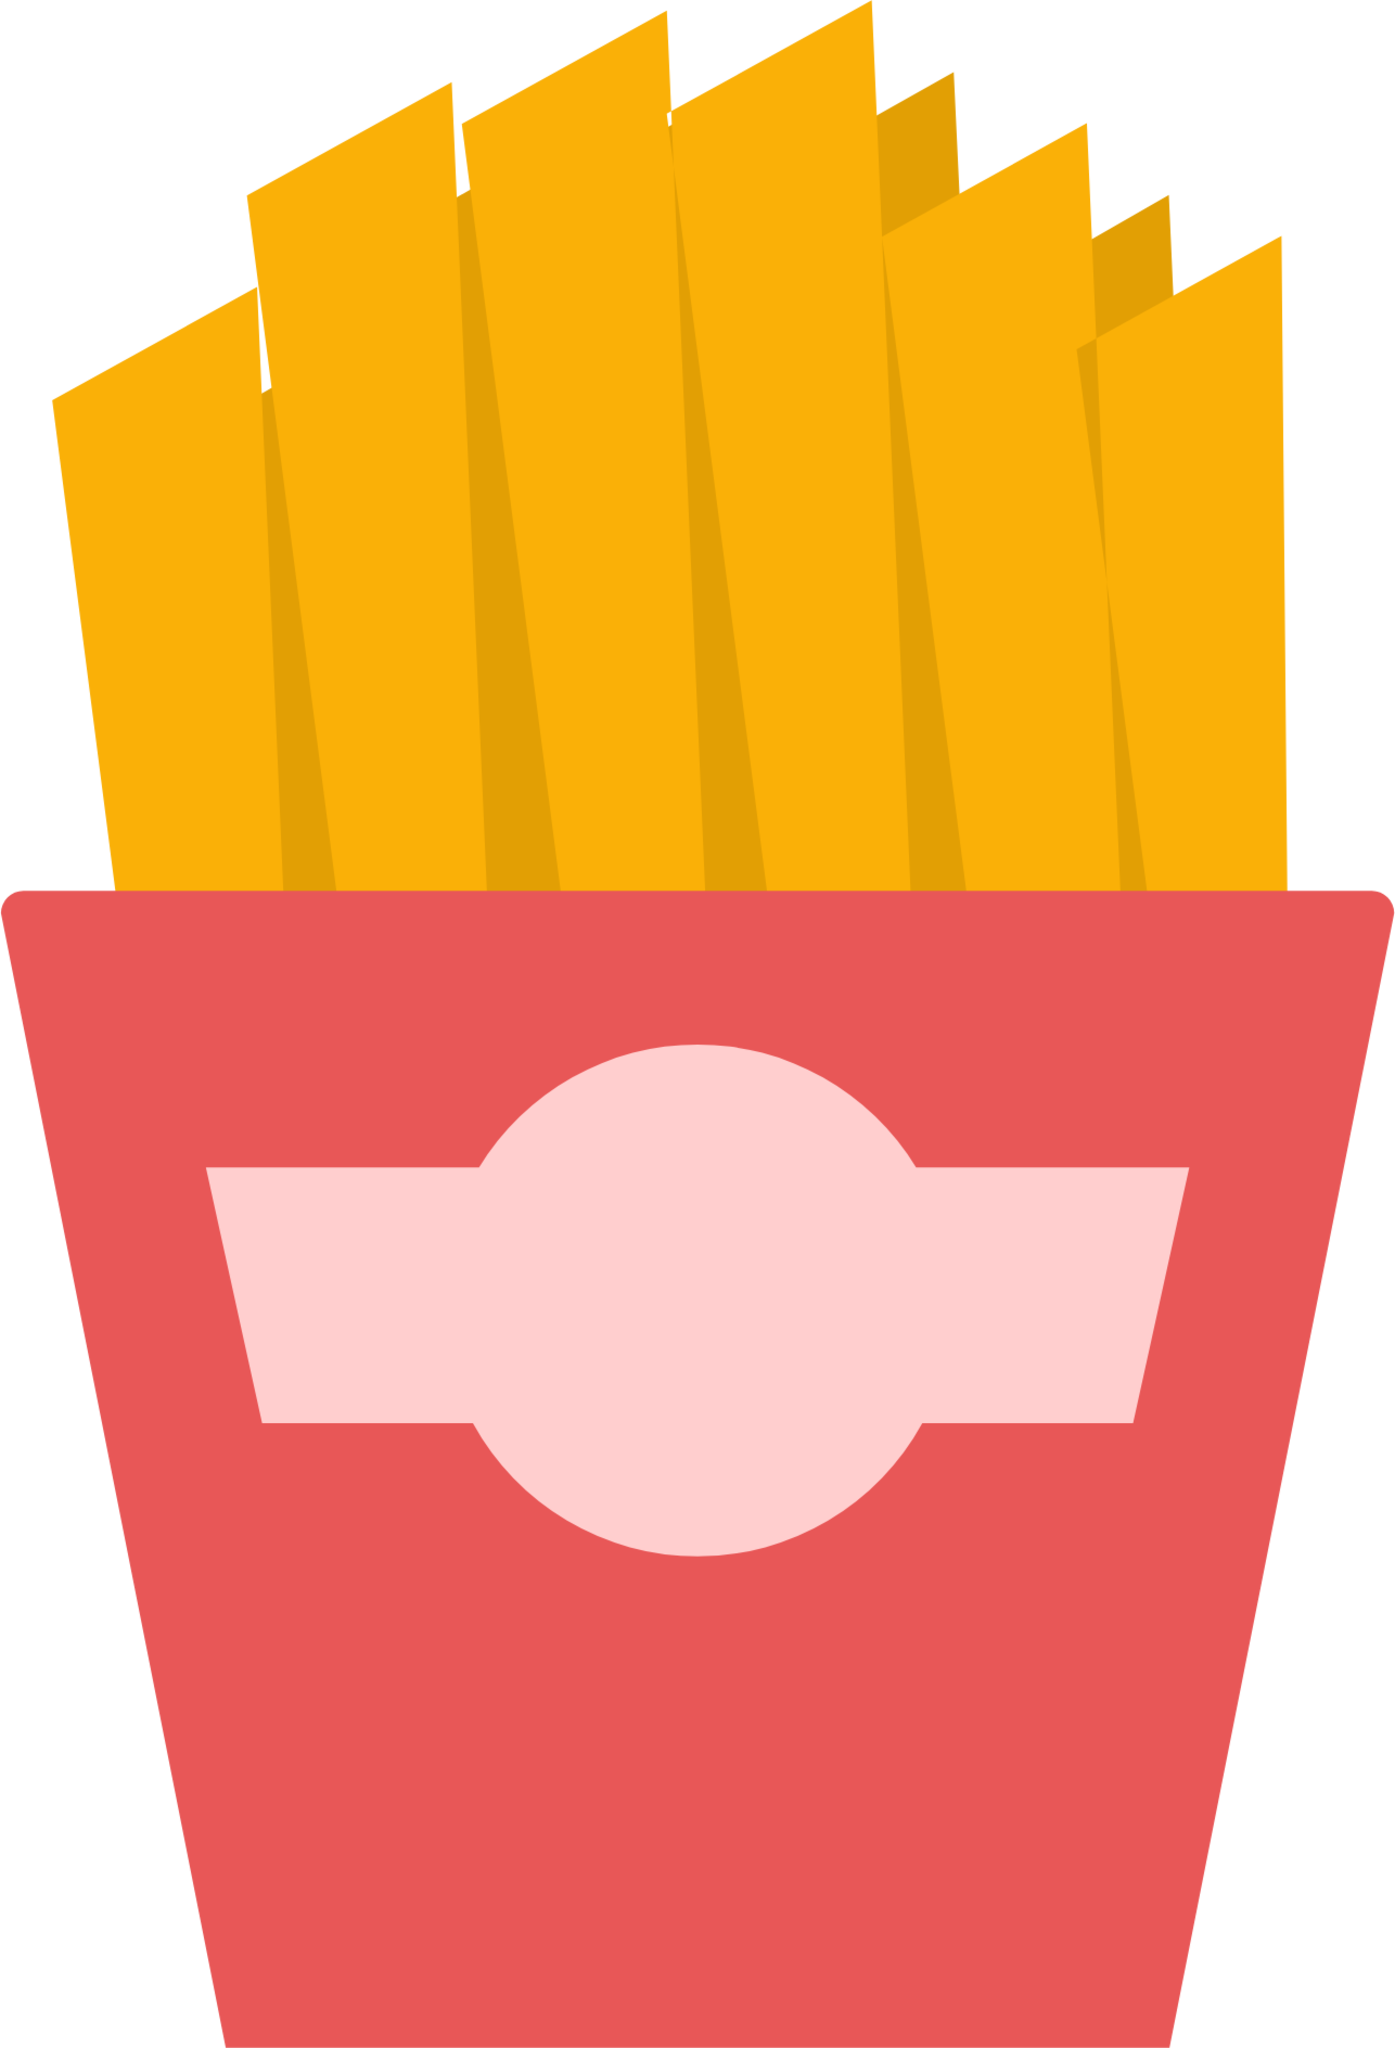 potato fries icon